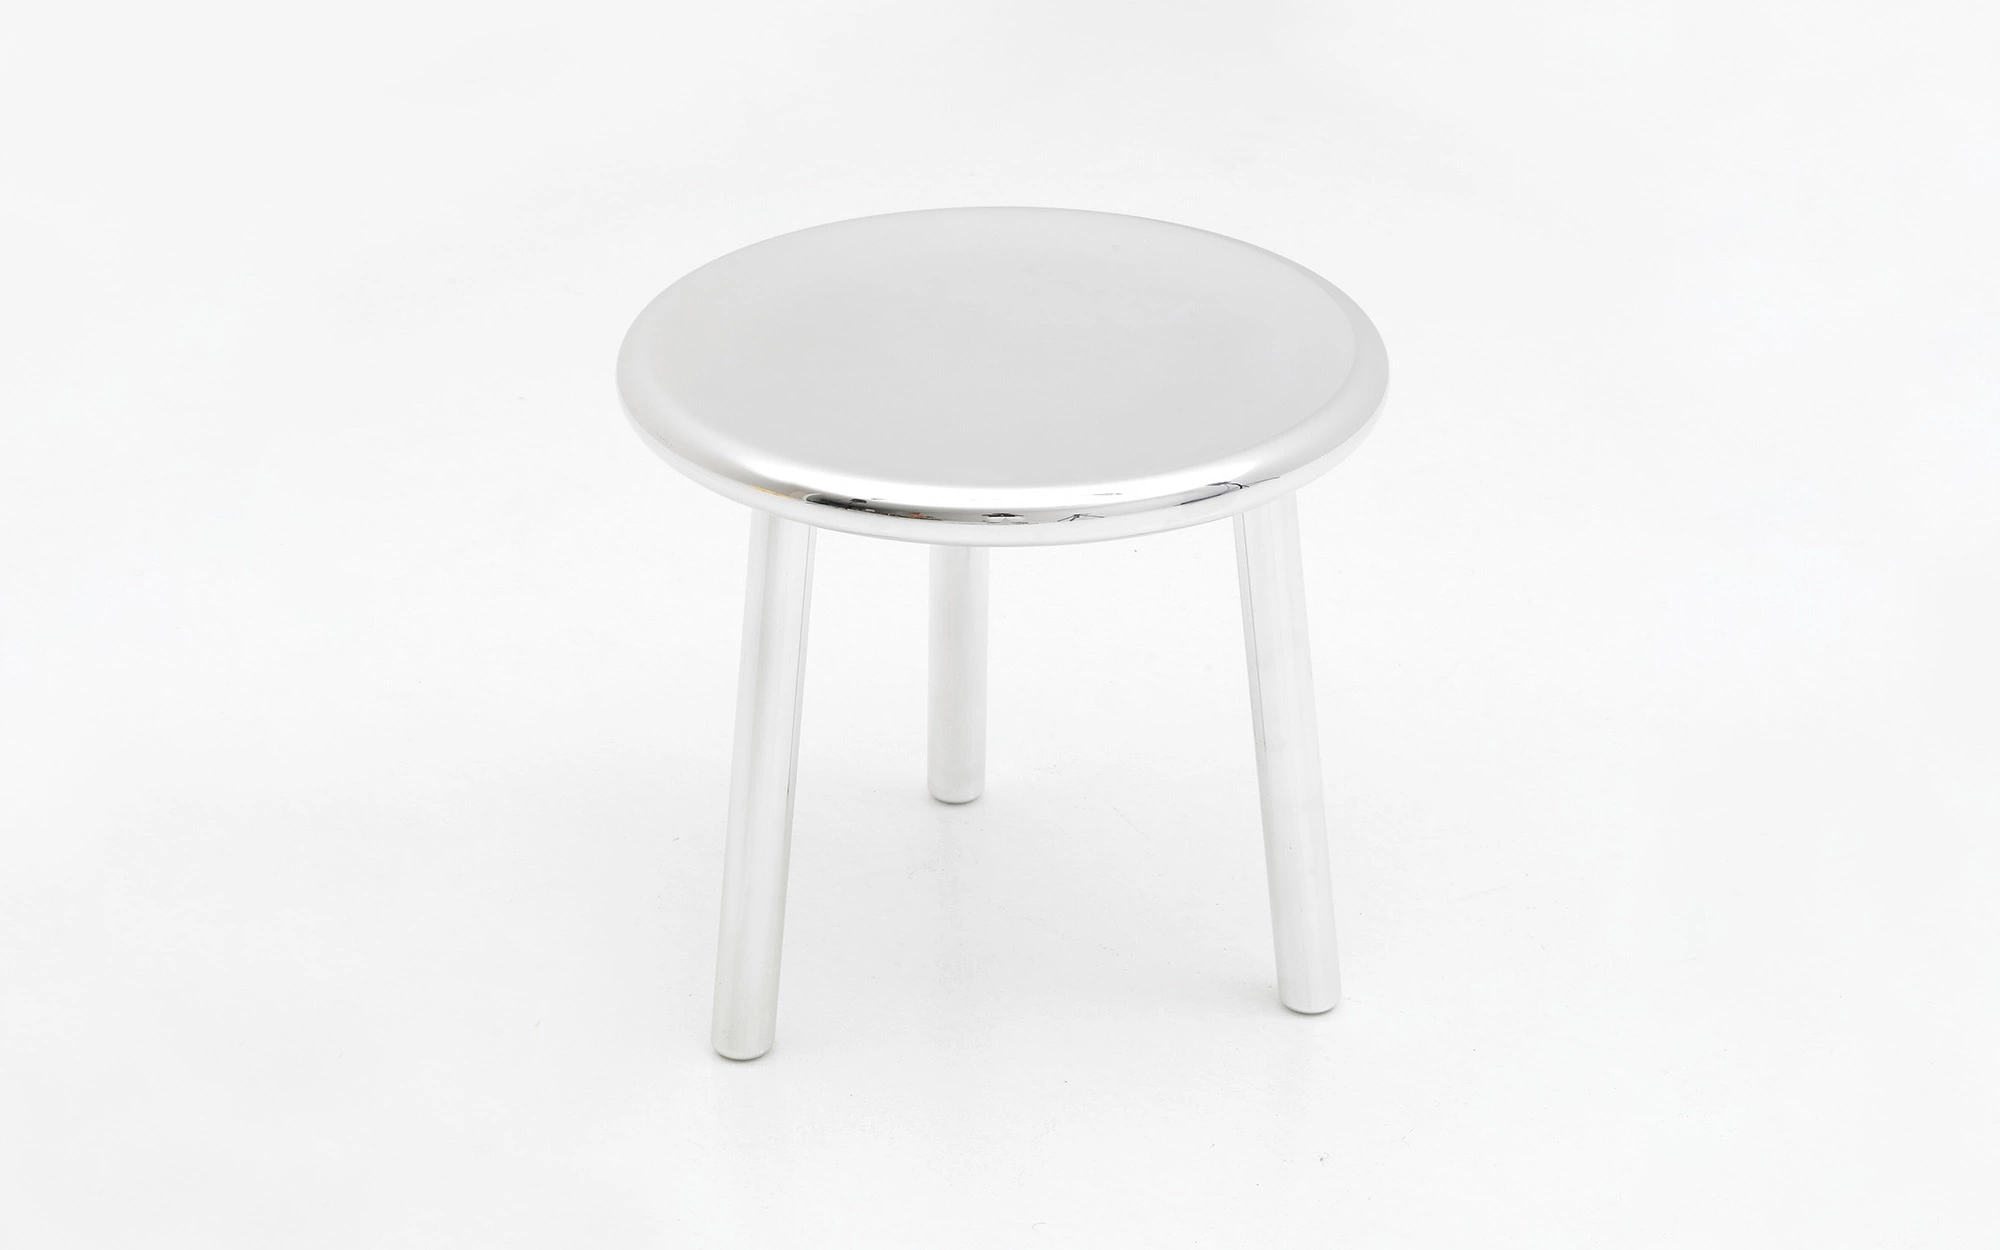 3-legged stool - Jasper Morrison - Desk - Galerie kreo